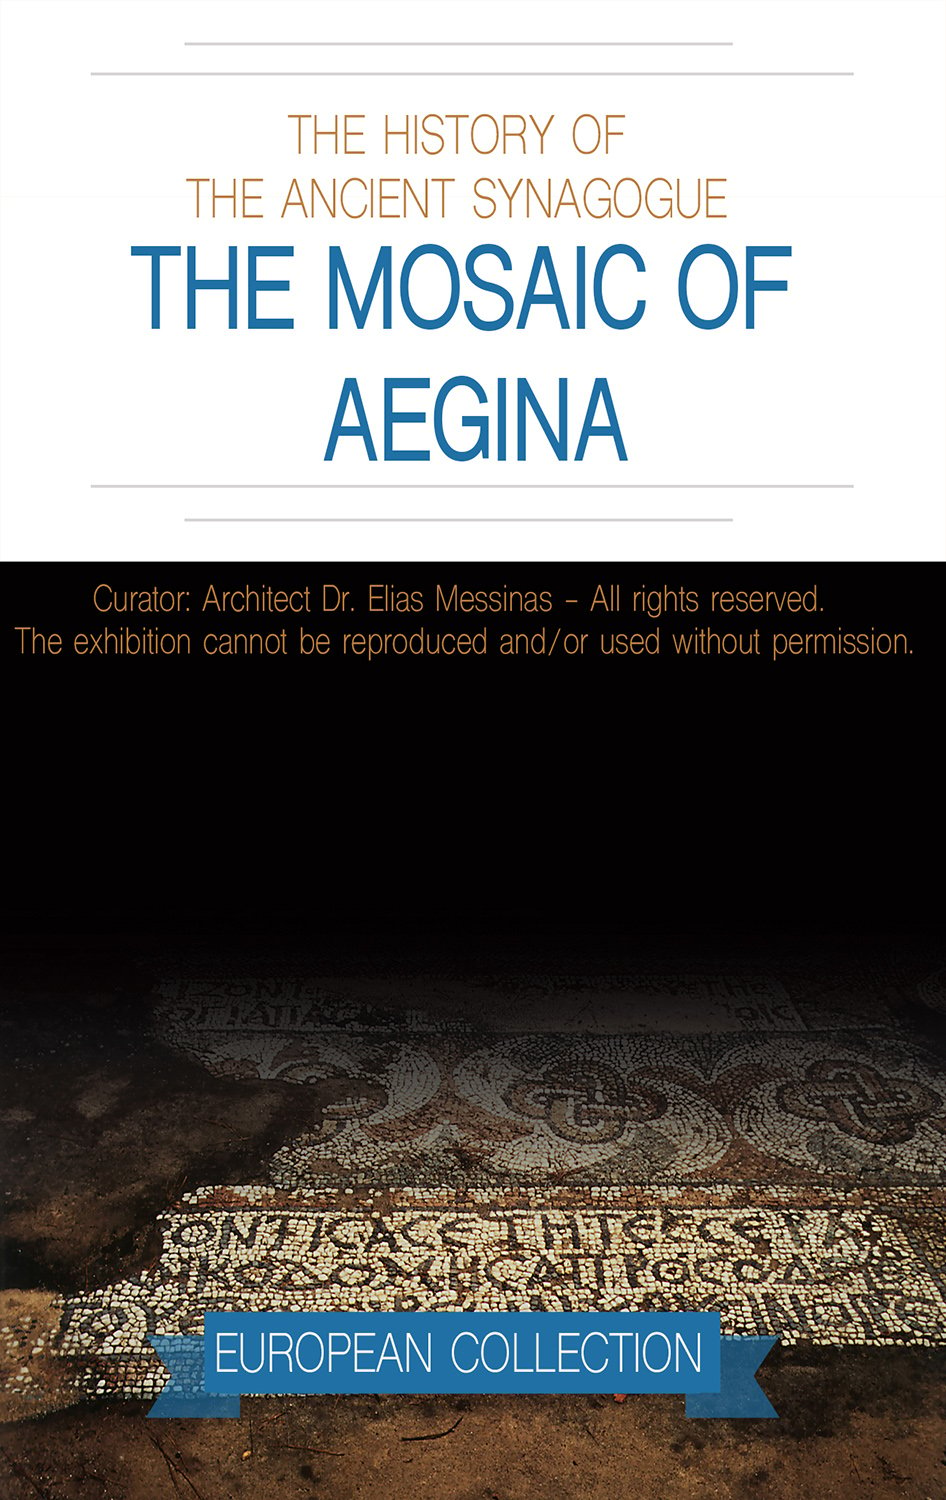 THE MOSAIC OF AEGINA  EXHIBITION